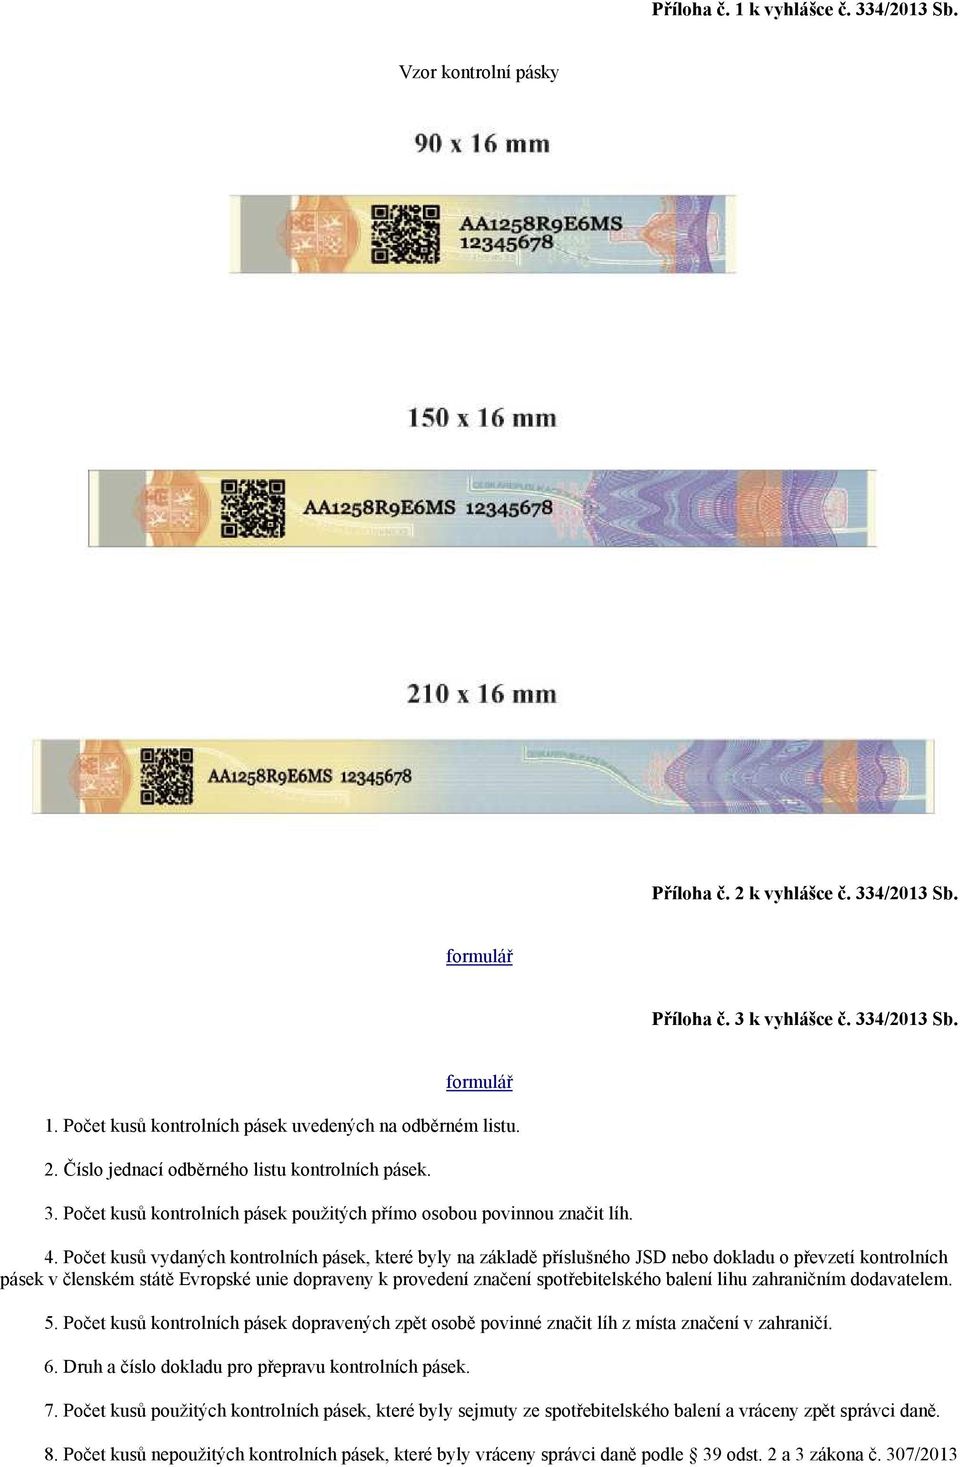 Počet kusů vydaných kontrolních pásek, které byly na základě příslušného JSD nebo dokladu o převzetí kontrolních pásek v členském státě Evropské unie dopraveny k provedení značení spotřebitelského